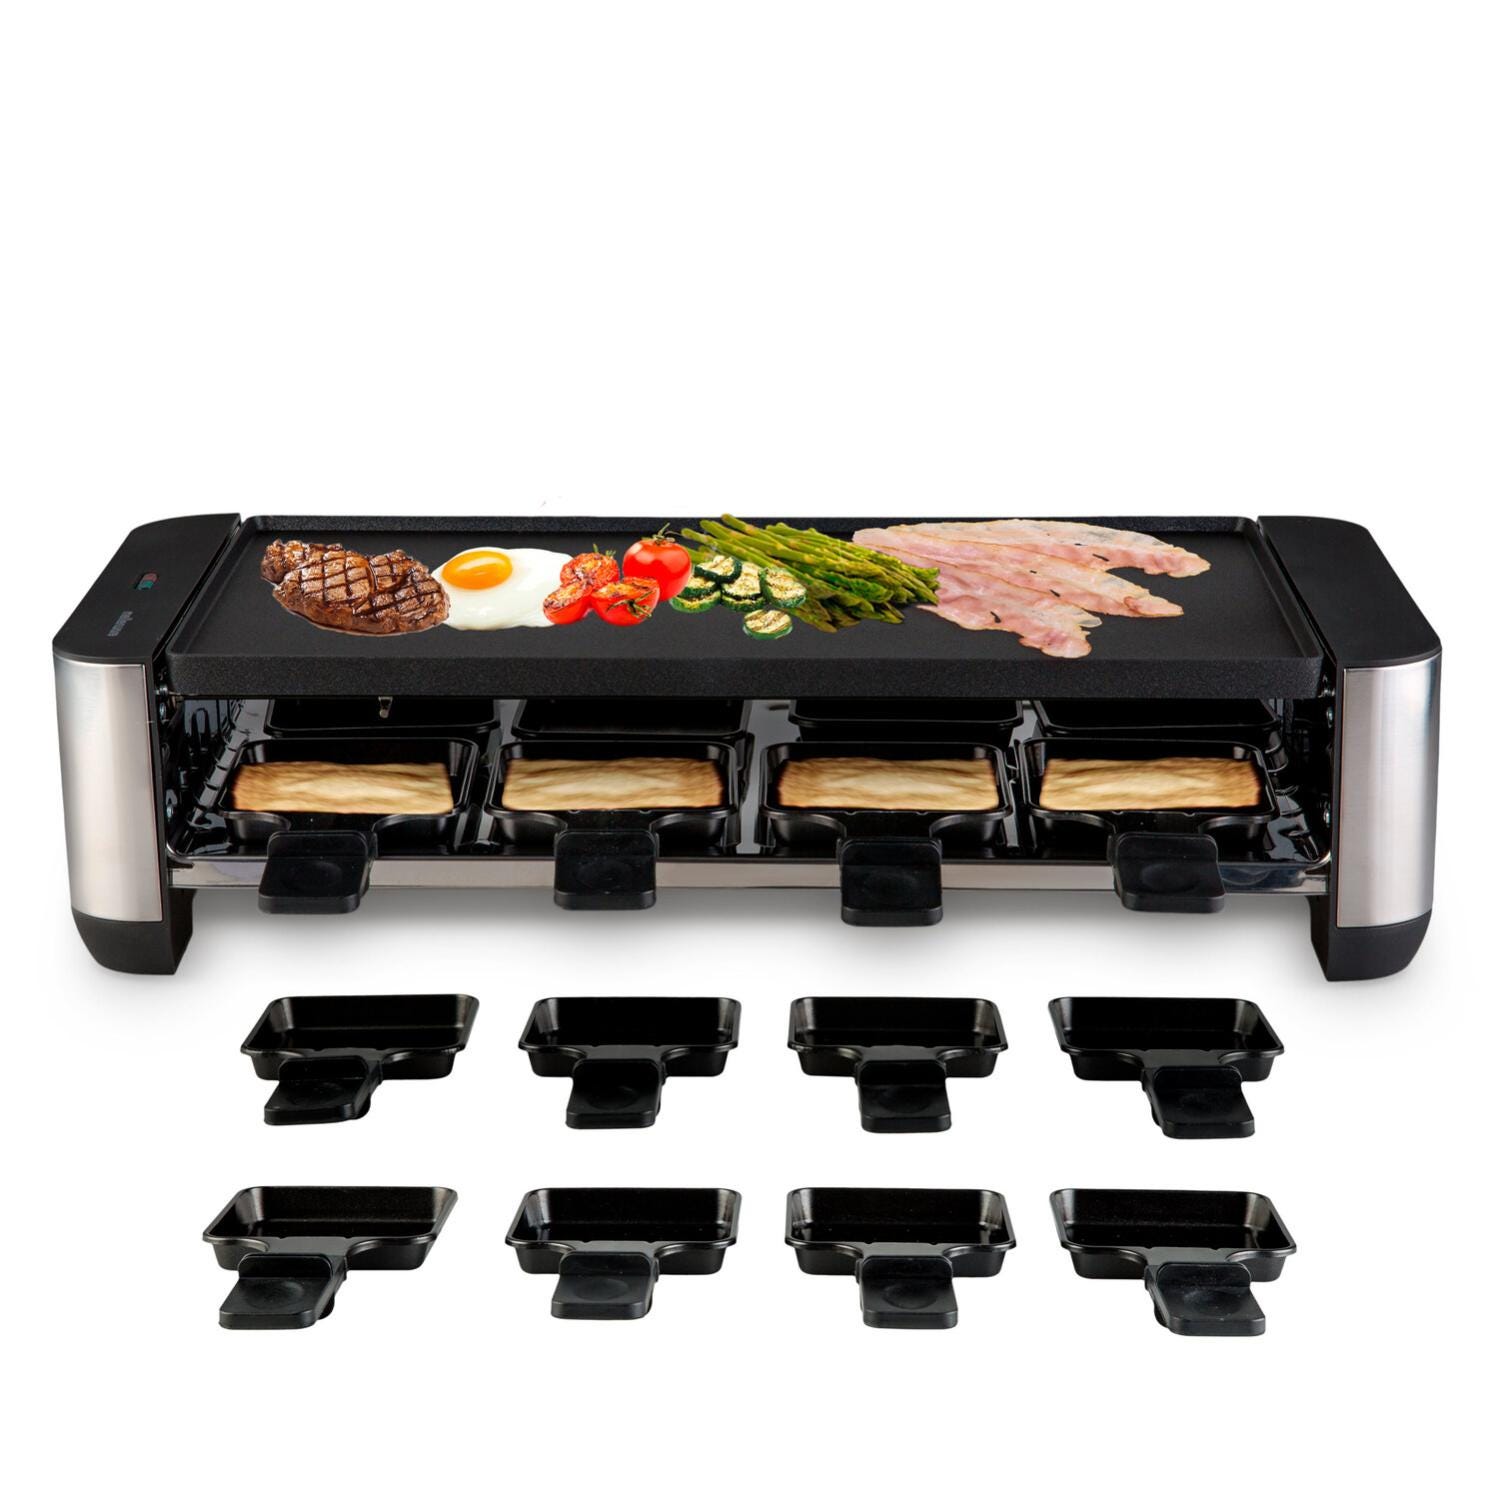 Raclette Mellerware Yummy! - 1400W, Grill 8 Personas, 16 Accesorios, MultifunciónBlack